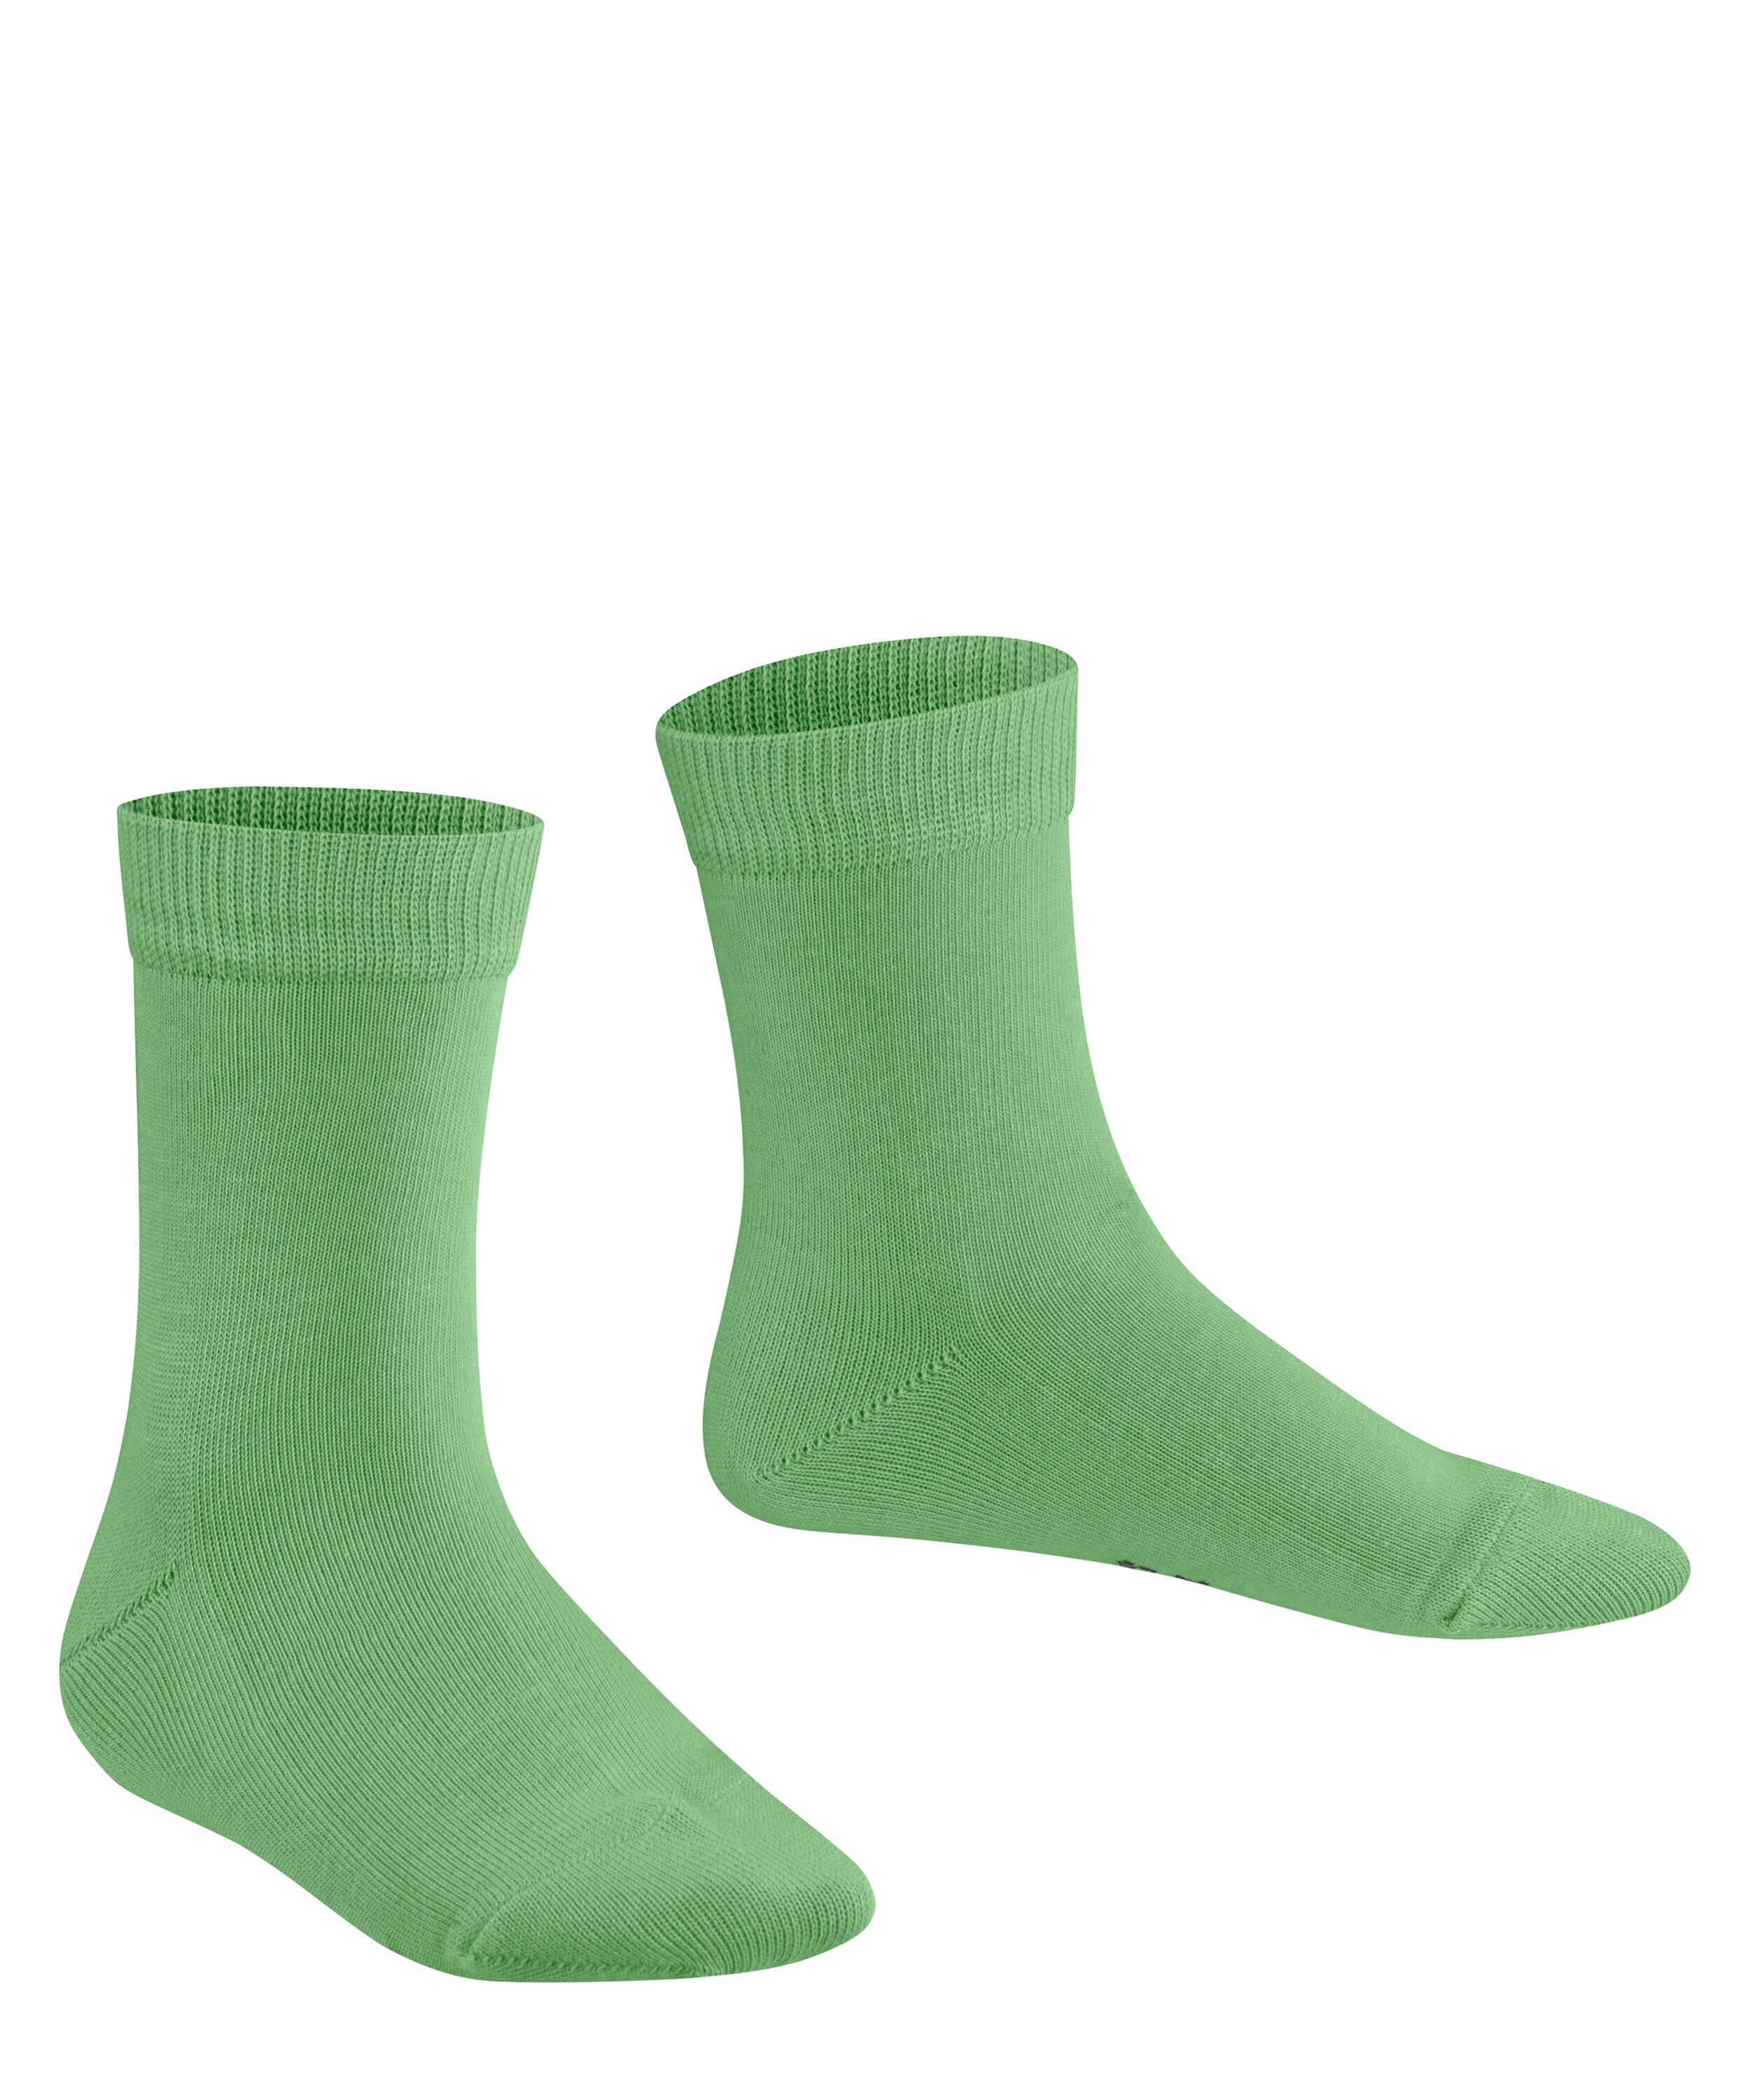 Socken (7486) Family (1-Paar) lizzardgreen FALKE